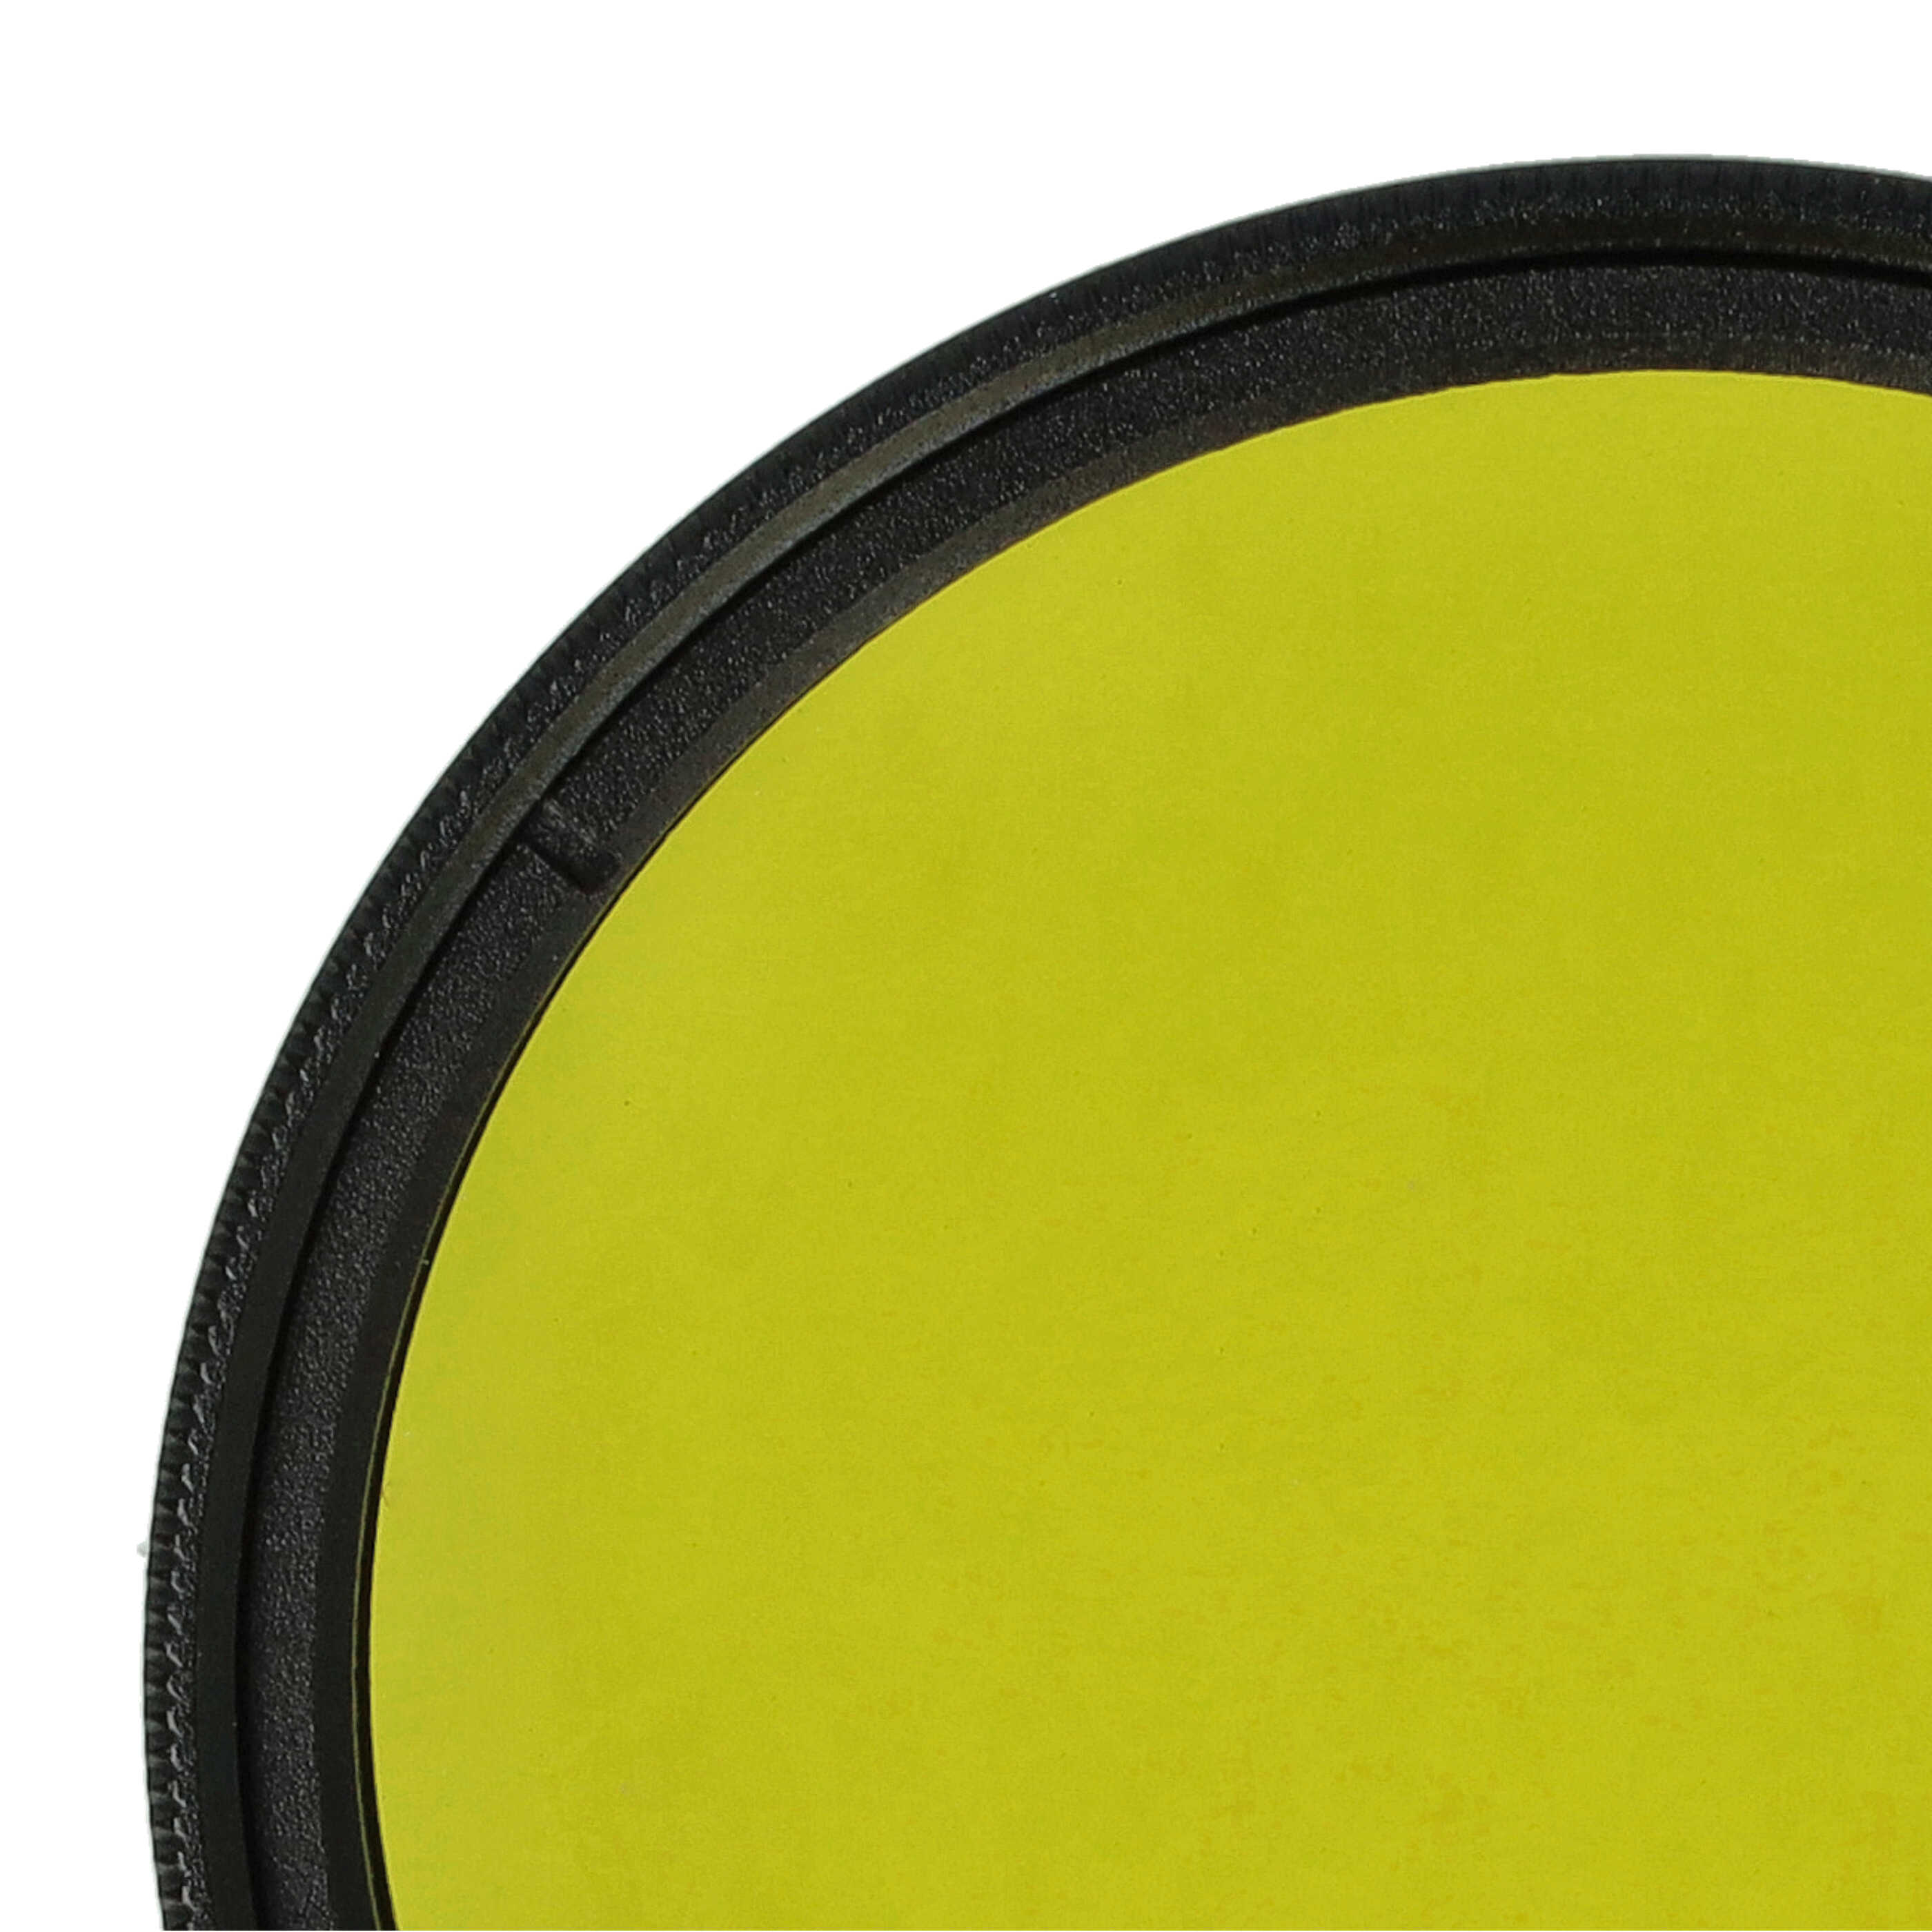 Farbfilter gelb passend für Kamera Objektive mit 49 mm Filtergewinde - Gelbfilter